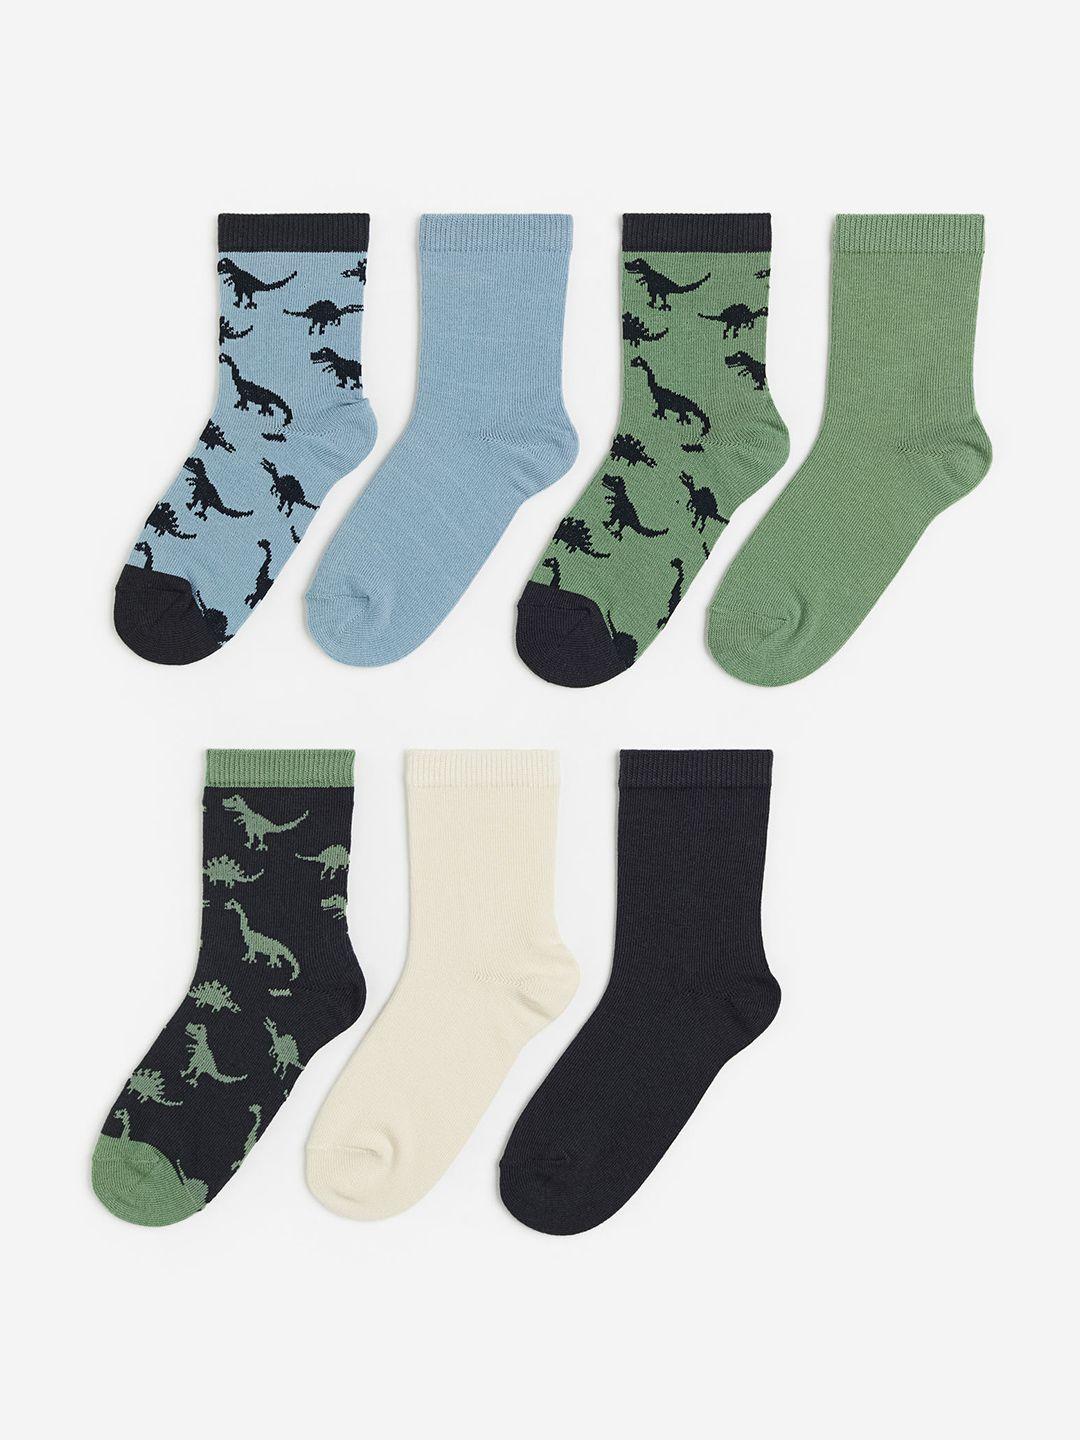 h&m boys 7 pack patterned socks